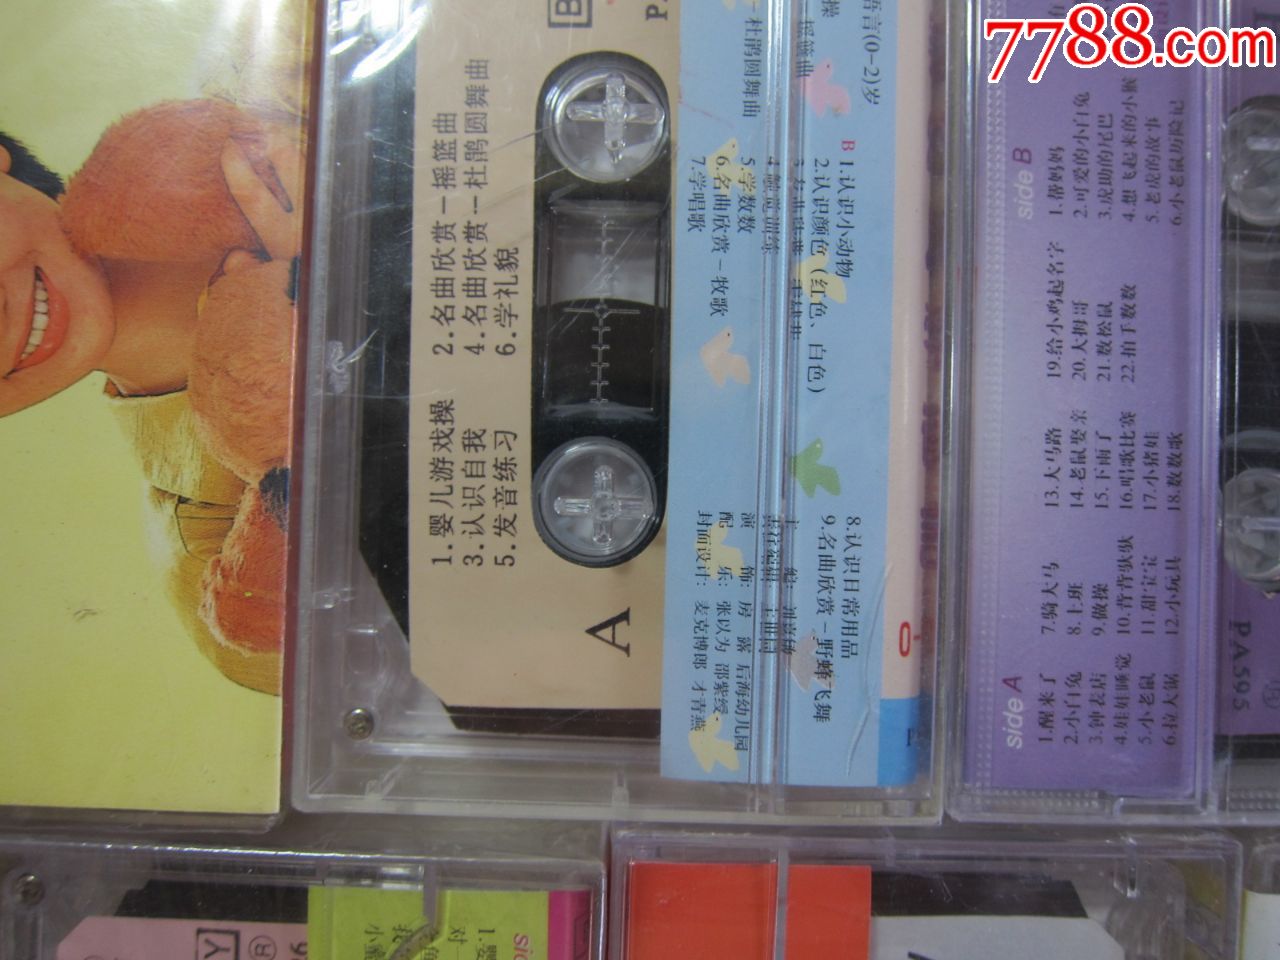 磁带11盒,儿歌金曲50首大联唱,鞠萍童谣与故事